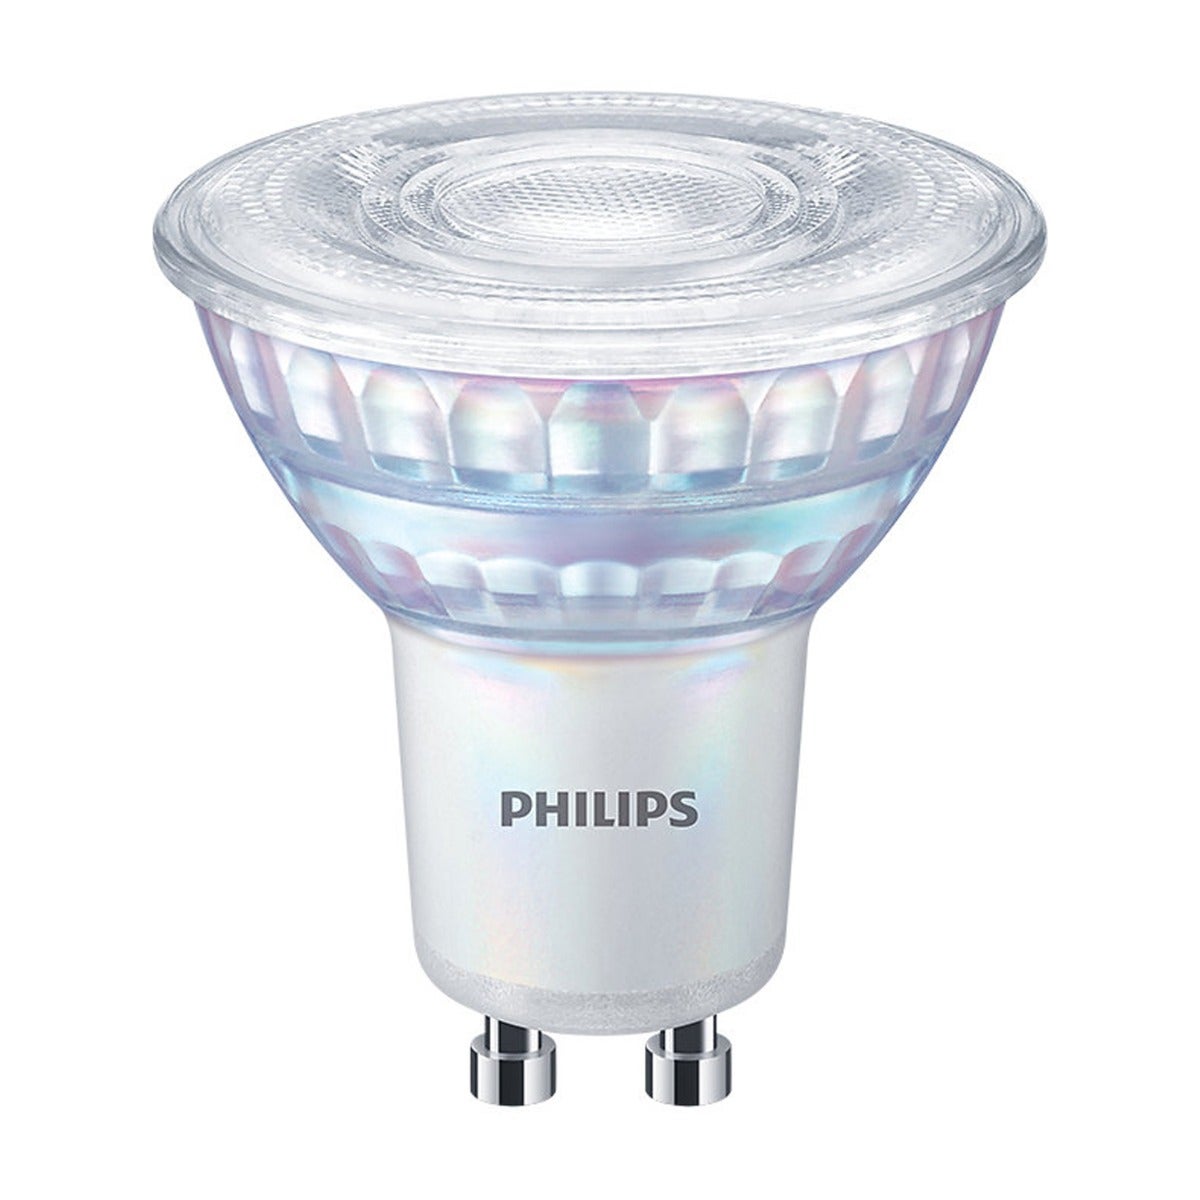 Philips Corepro LEDspot GU10 PAR16 3.5W 275lm 36D - 840 Blanc Froid, Équivalent 35W